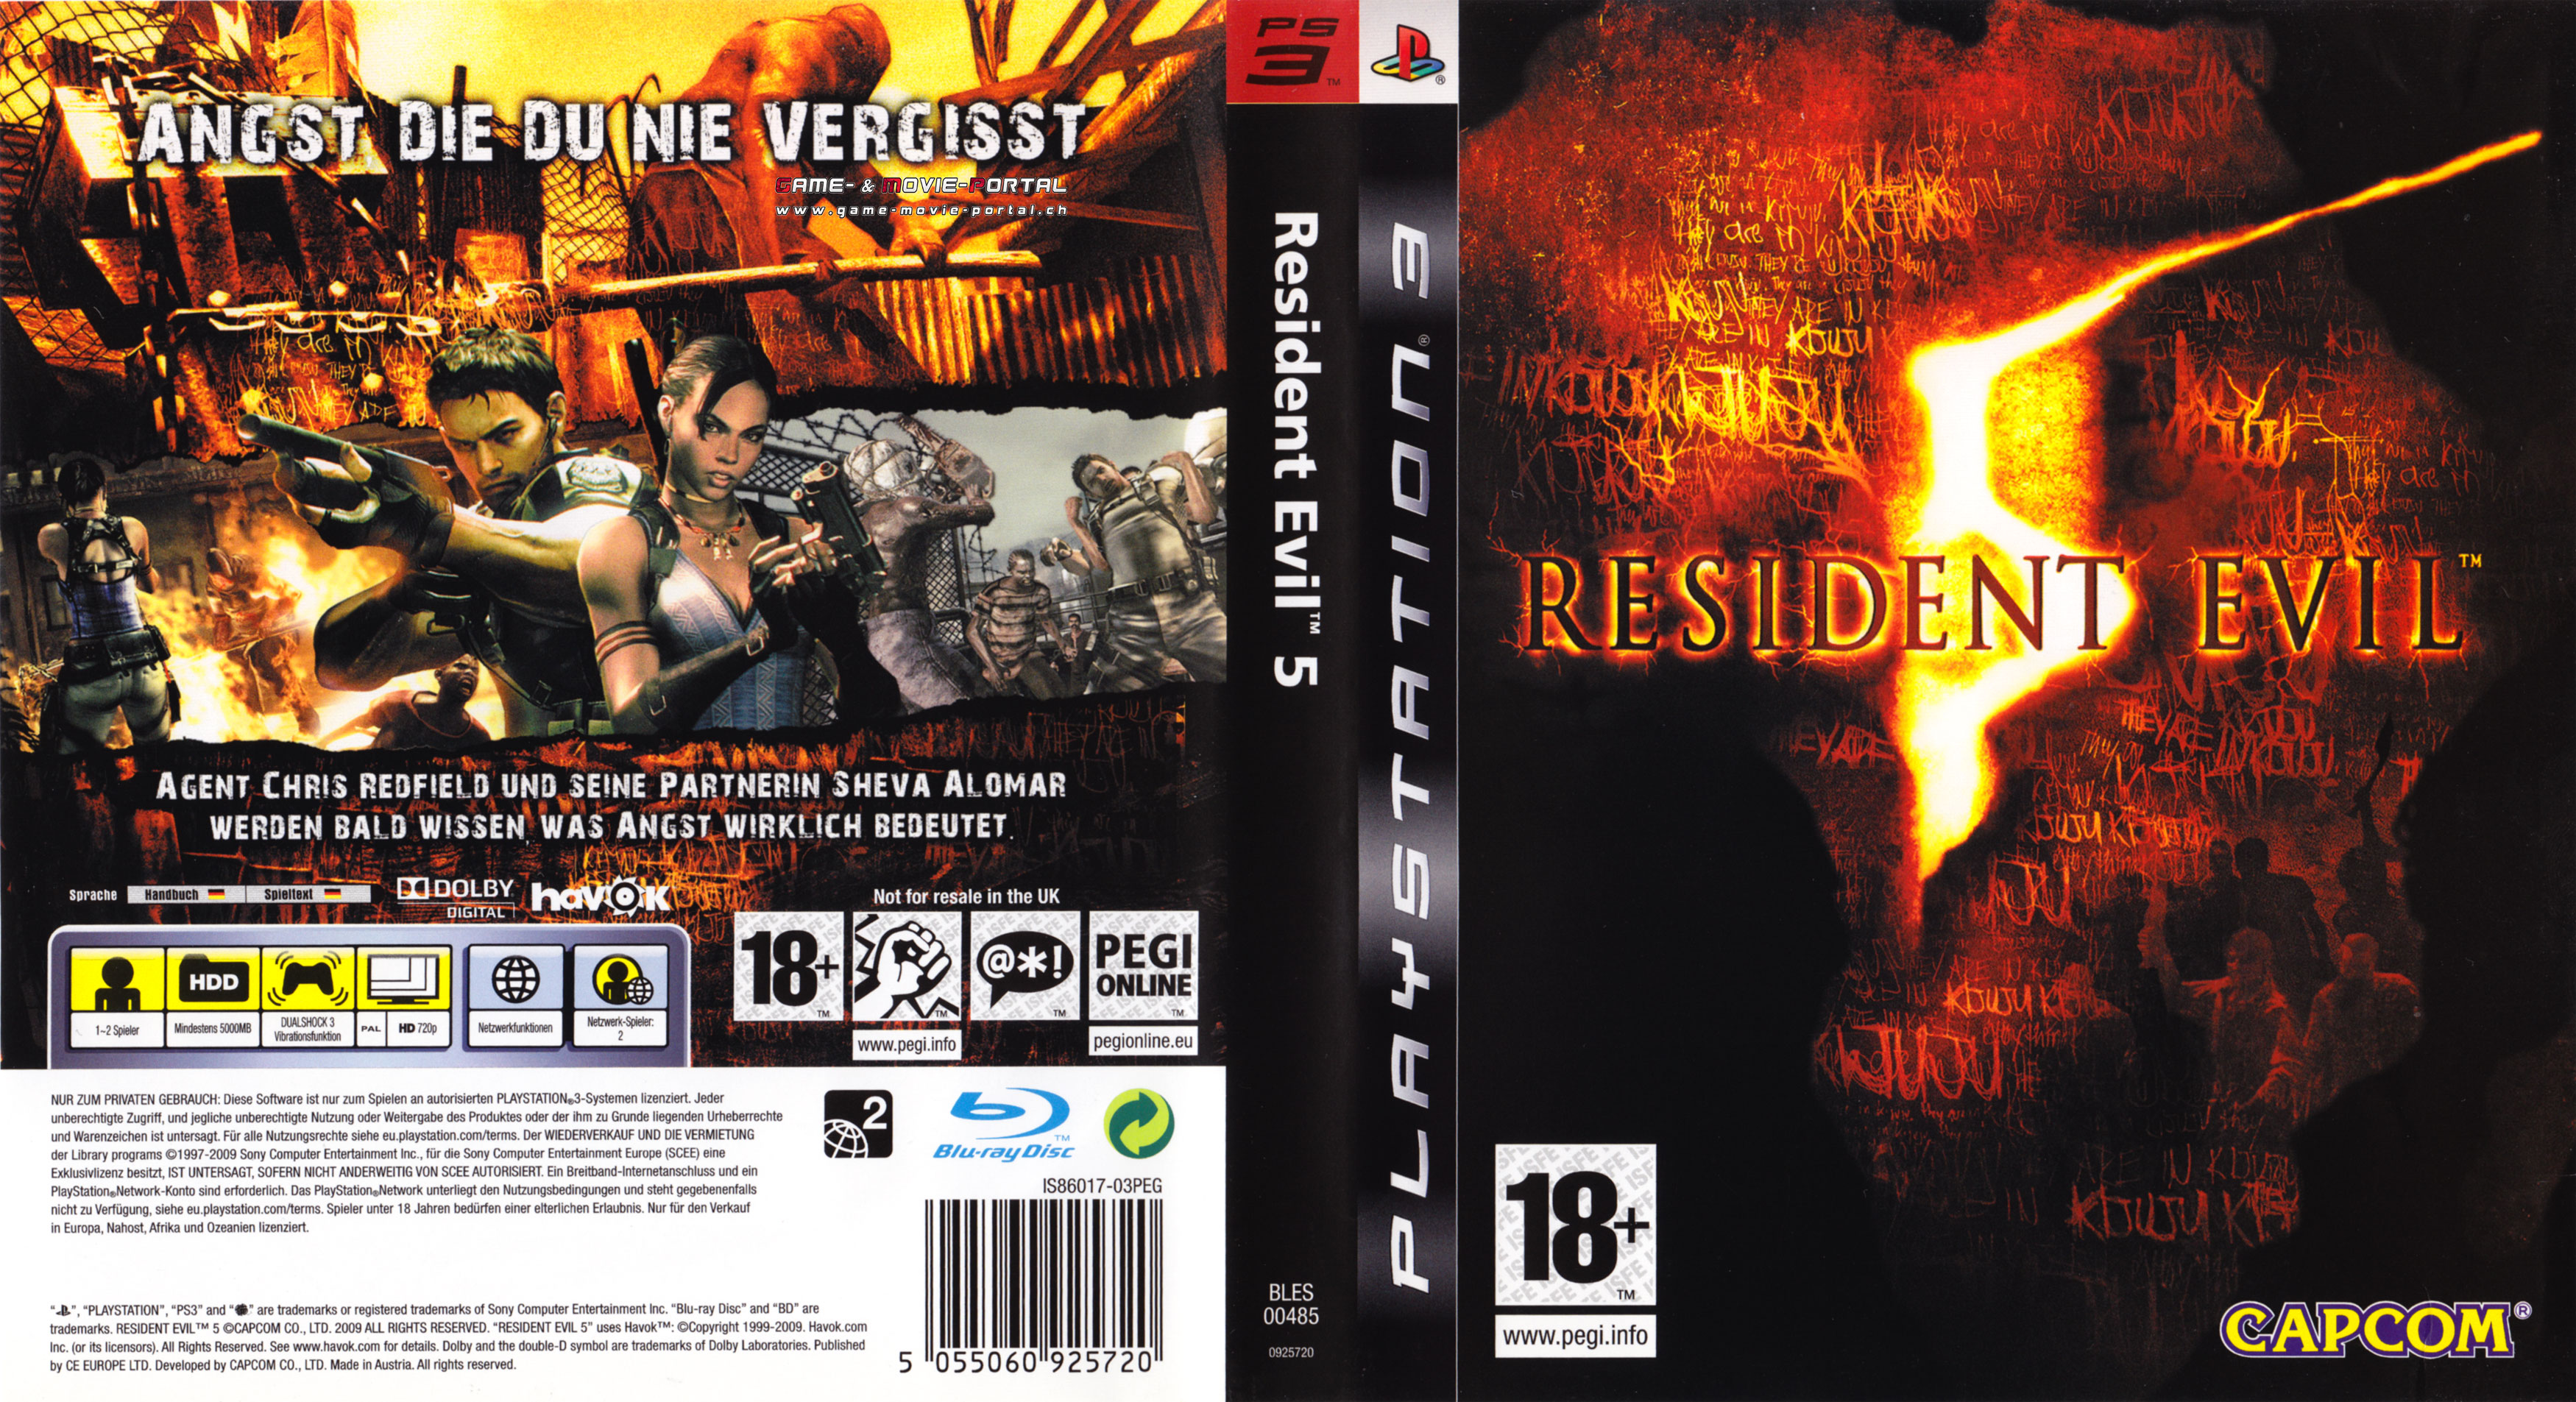 Resident evil 3 ps5. Resident Evil 5 ps3 обложка. Resident Evil 5 ps3 Cover. Resident Evil 5 Gold Edition диск. Resident Evil 5: Gold Edition обложка.